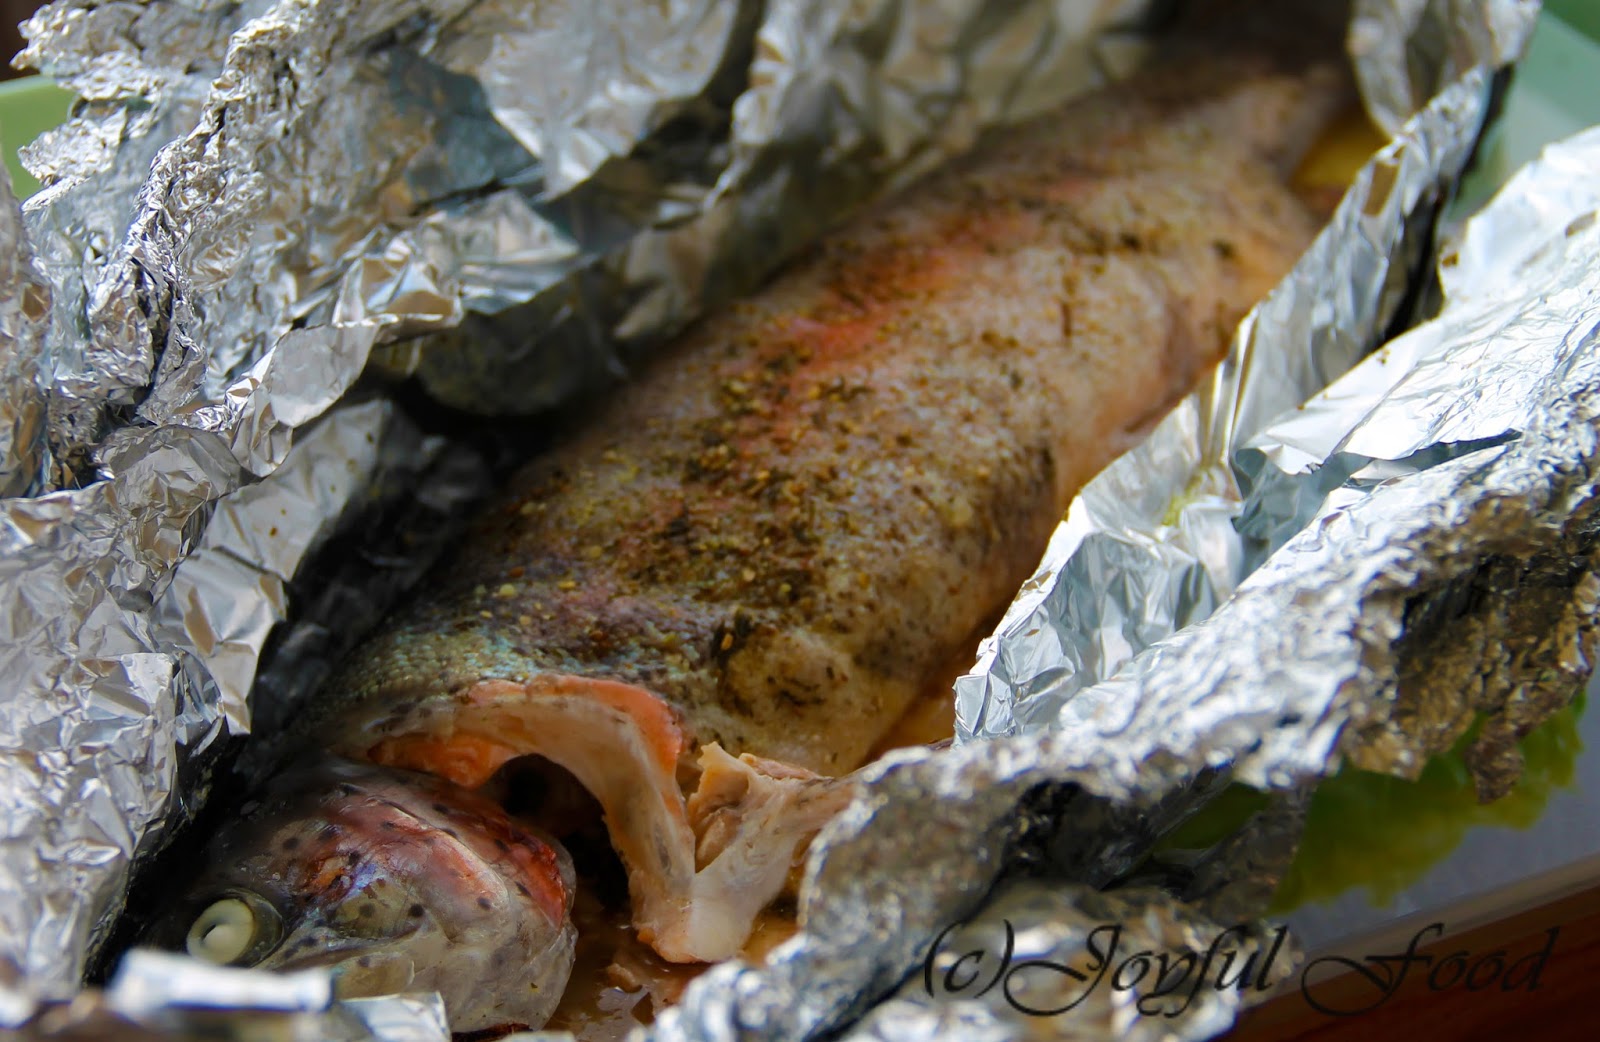 Gegrillter Fisch in Folie | Joyful Food